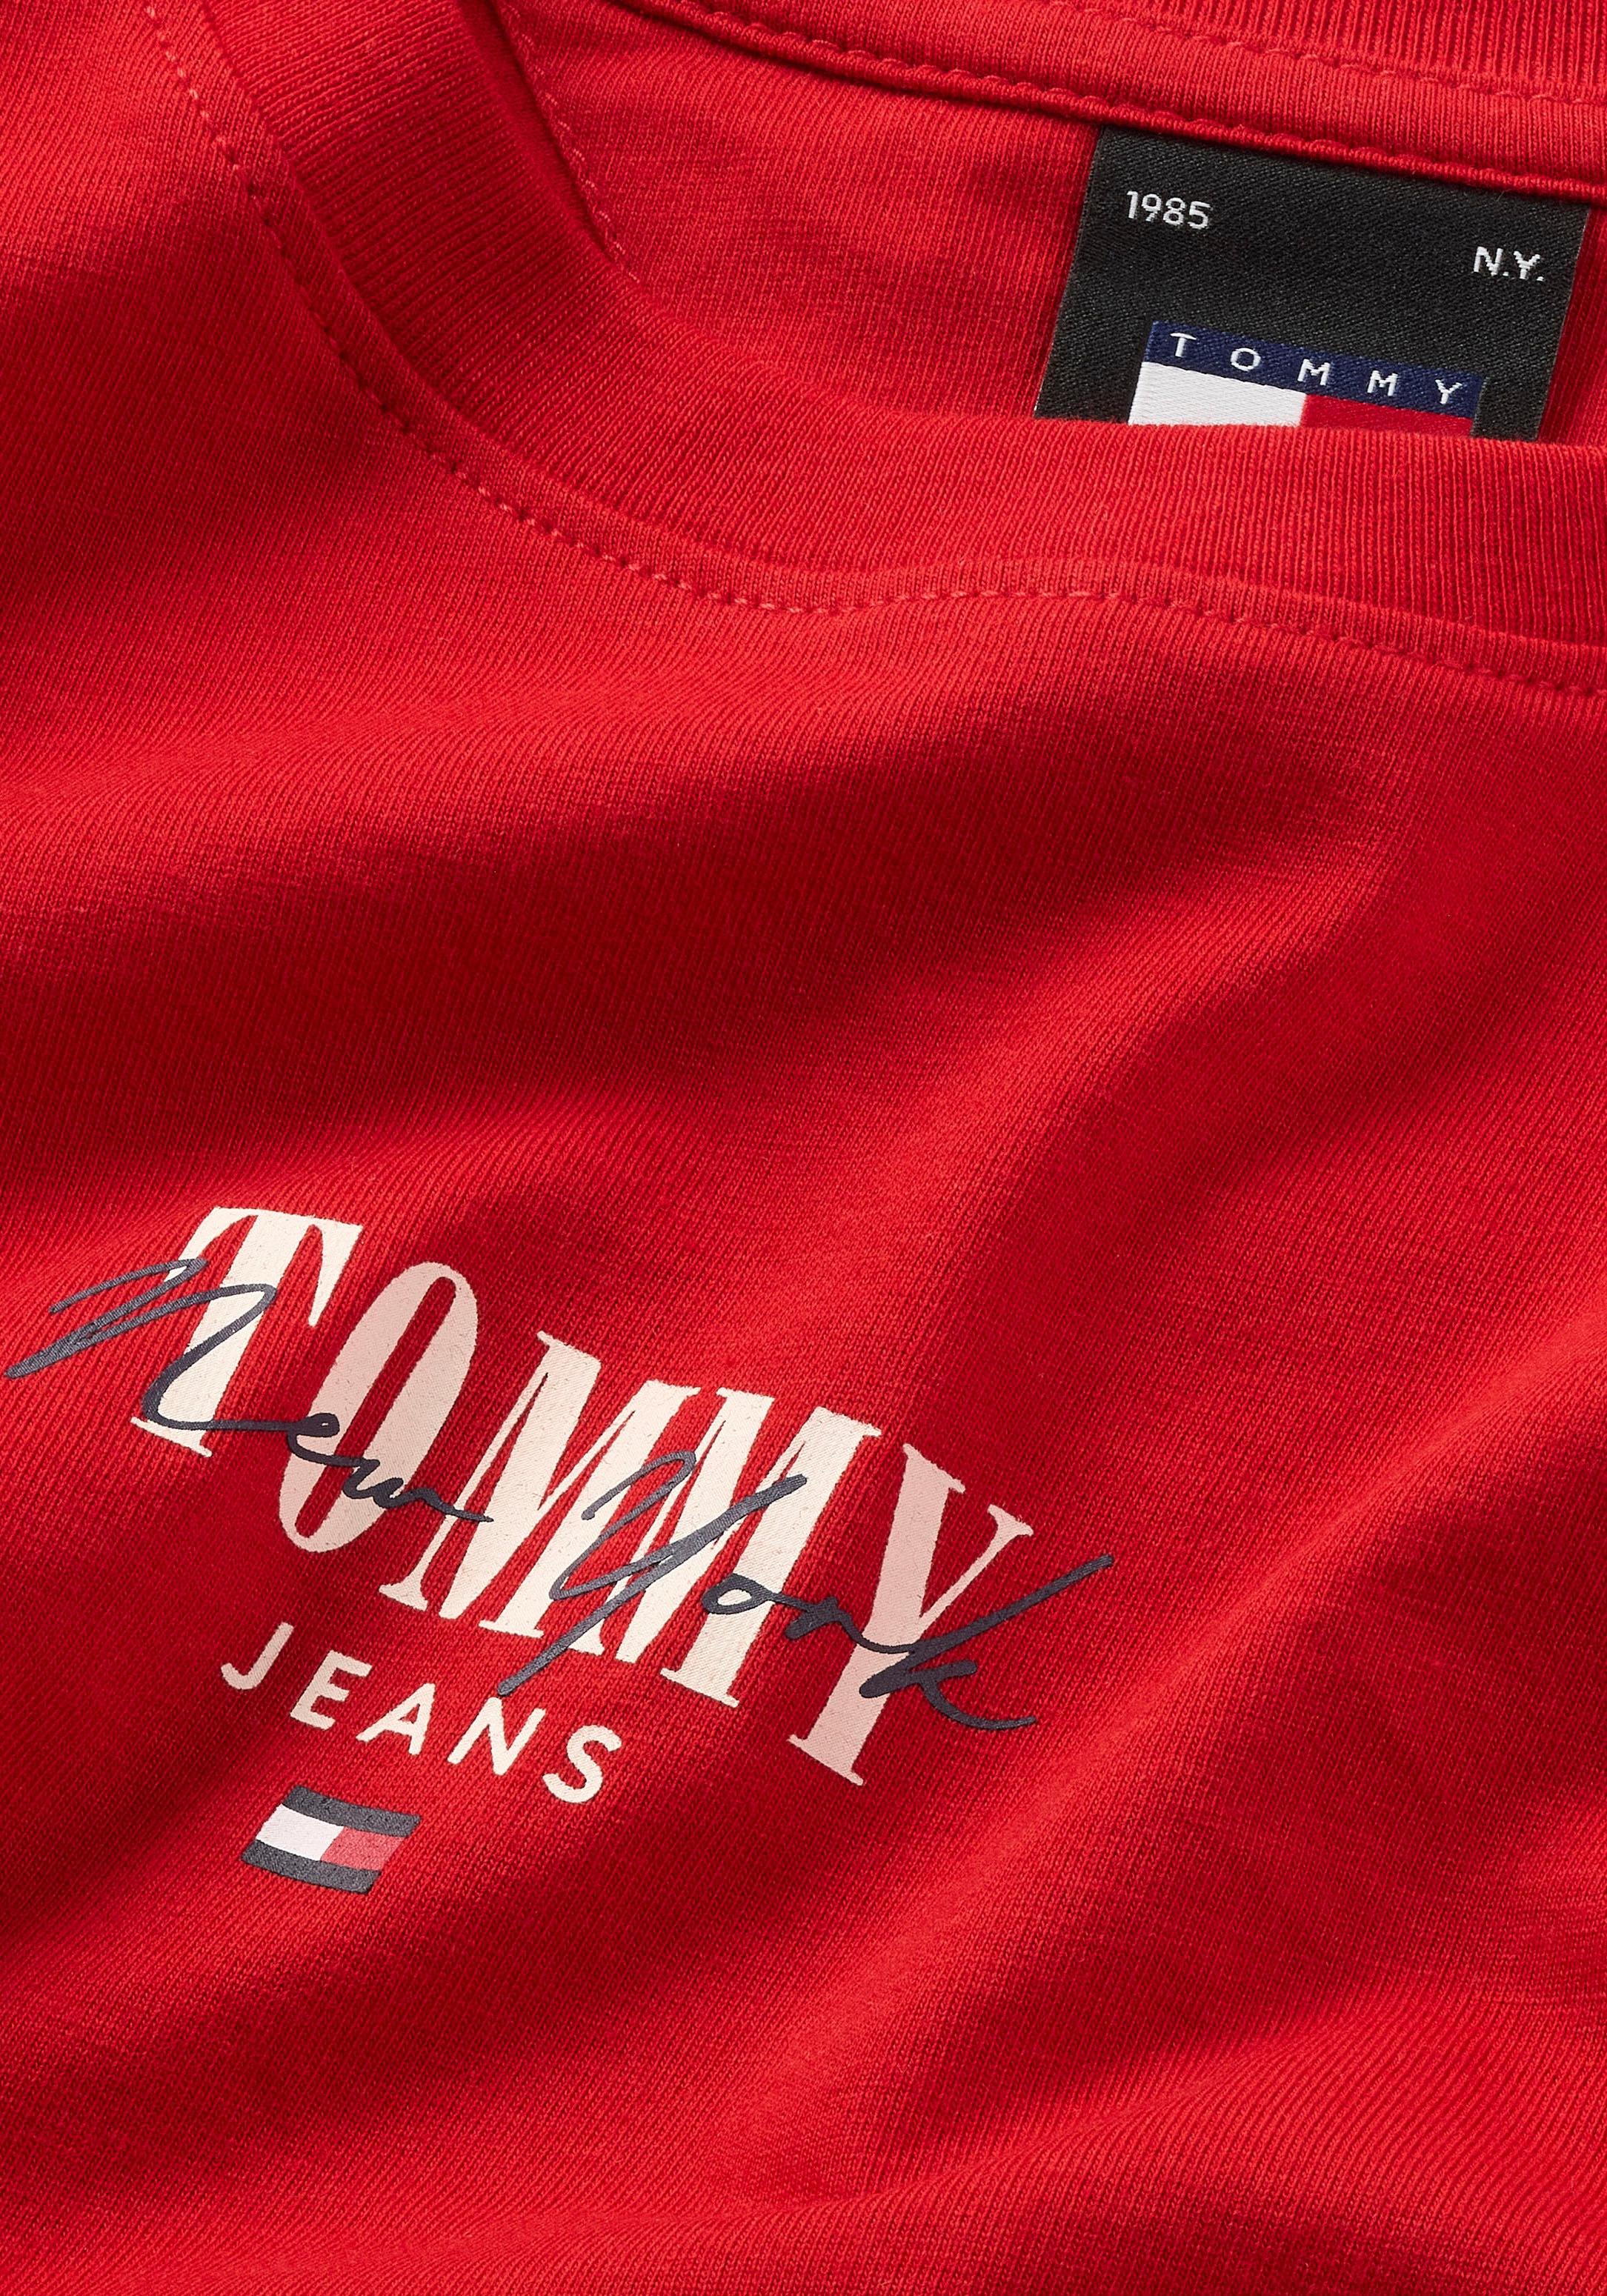 Tommy Jeans Rundhalsshirt »Rib Slim Essential Logo«, Rippshirt, feines Jersey Rippe, elastisch mit Tommy Jeans Logo